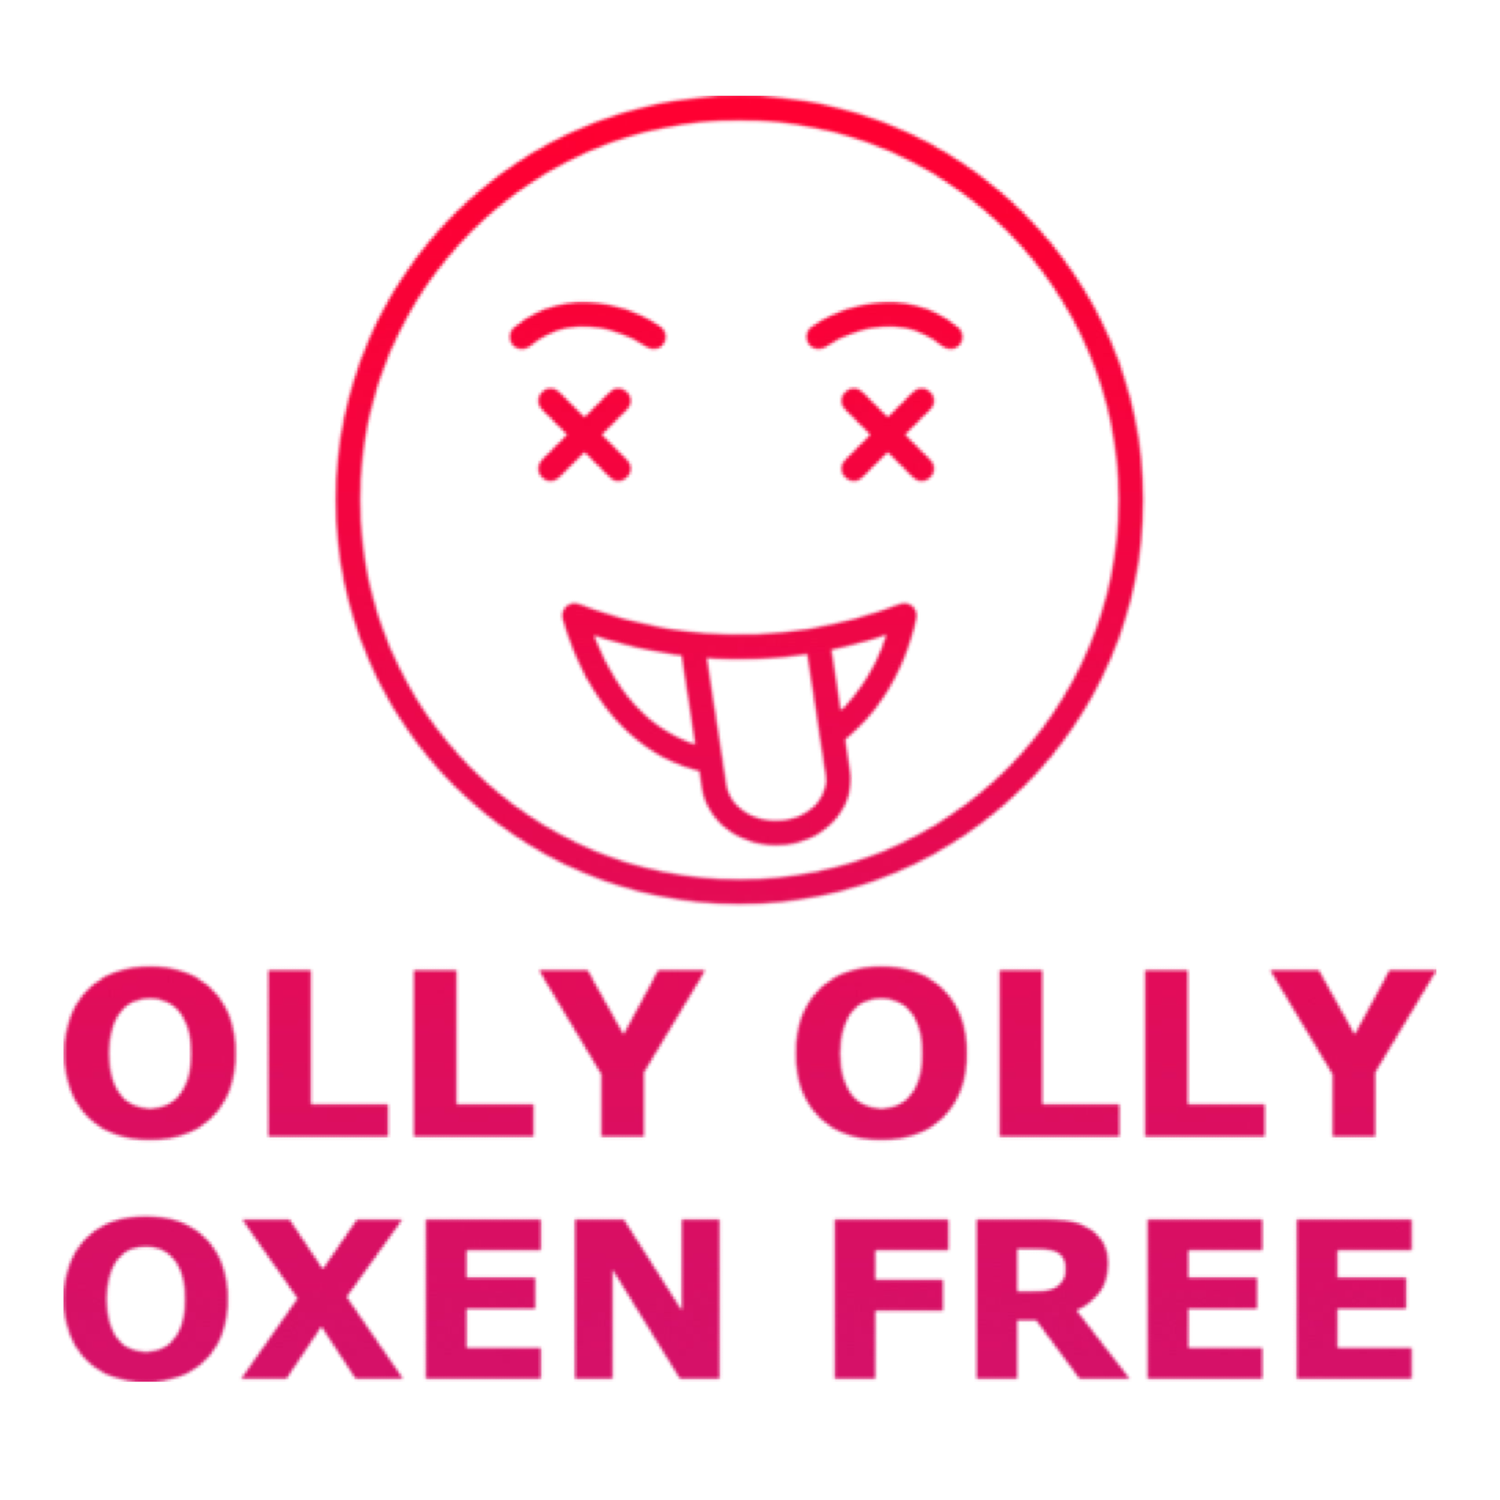 OLLY OLLY OXEN FREE